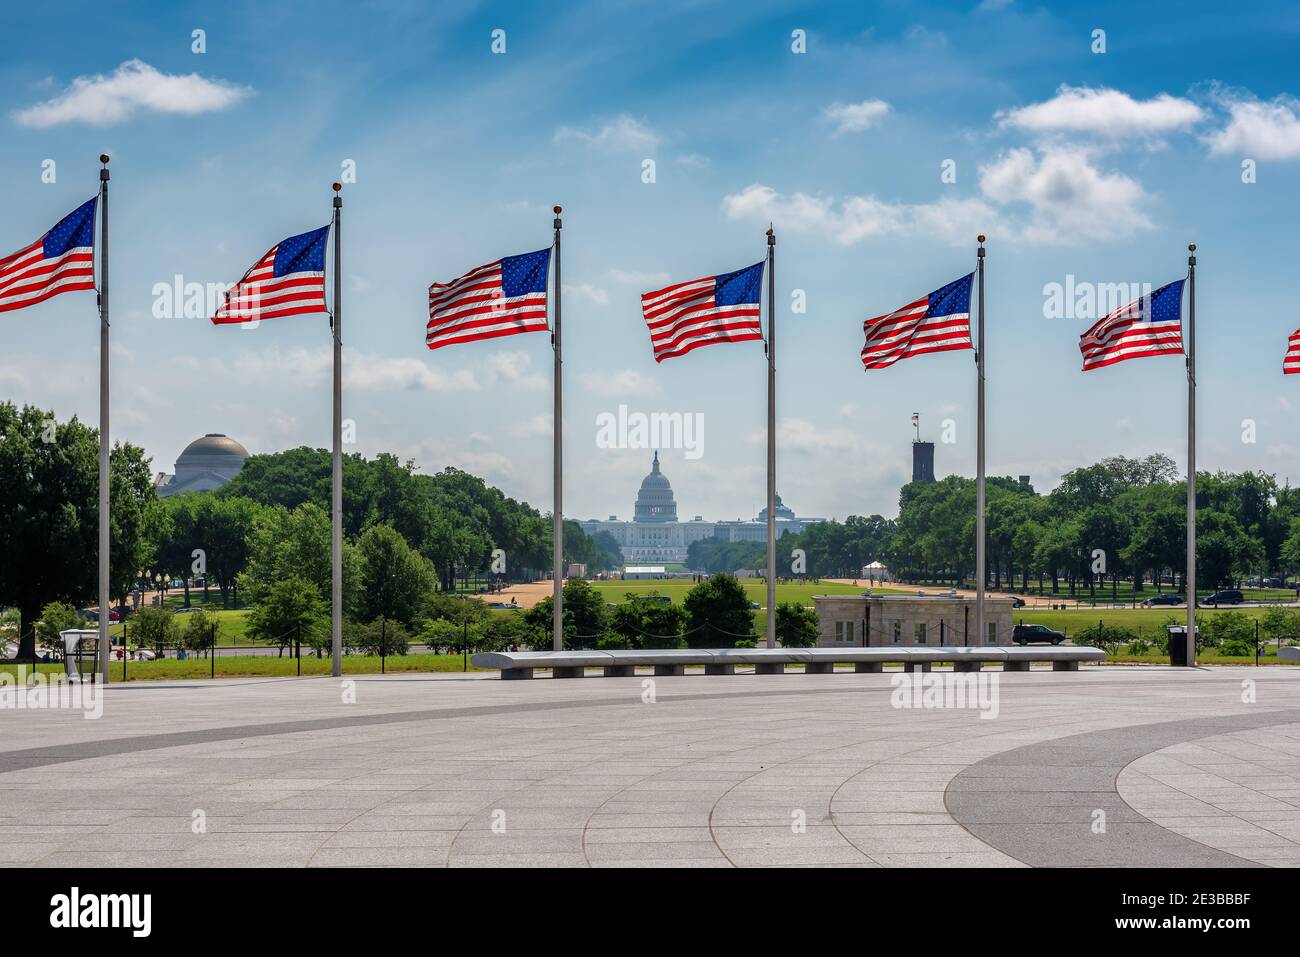 Banderas americanas en el día soleado y el edificio del Capitolio en el fondo en Washington DC, EE.UU. Foto de stock